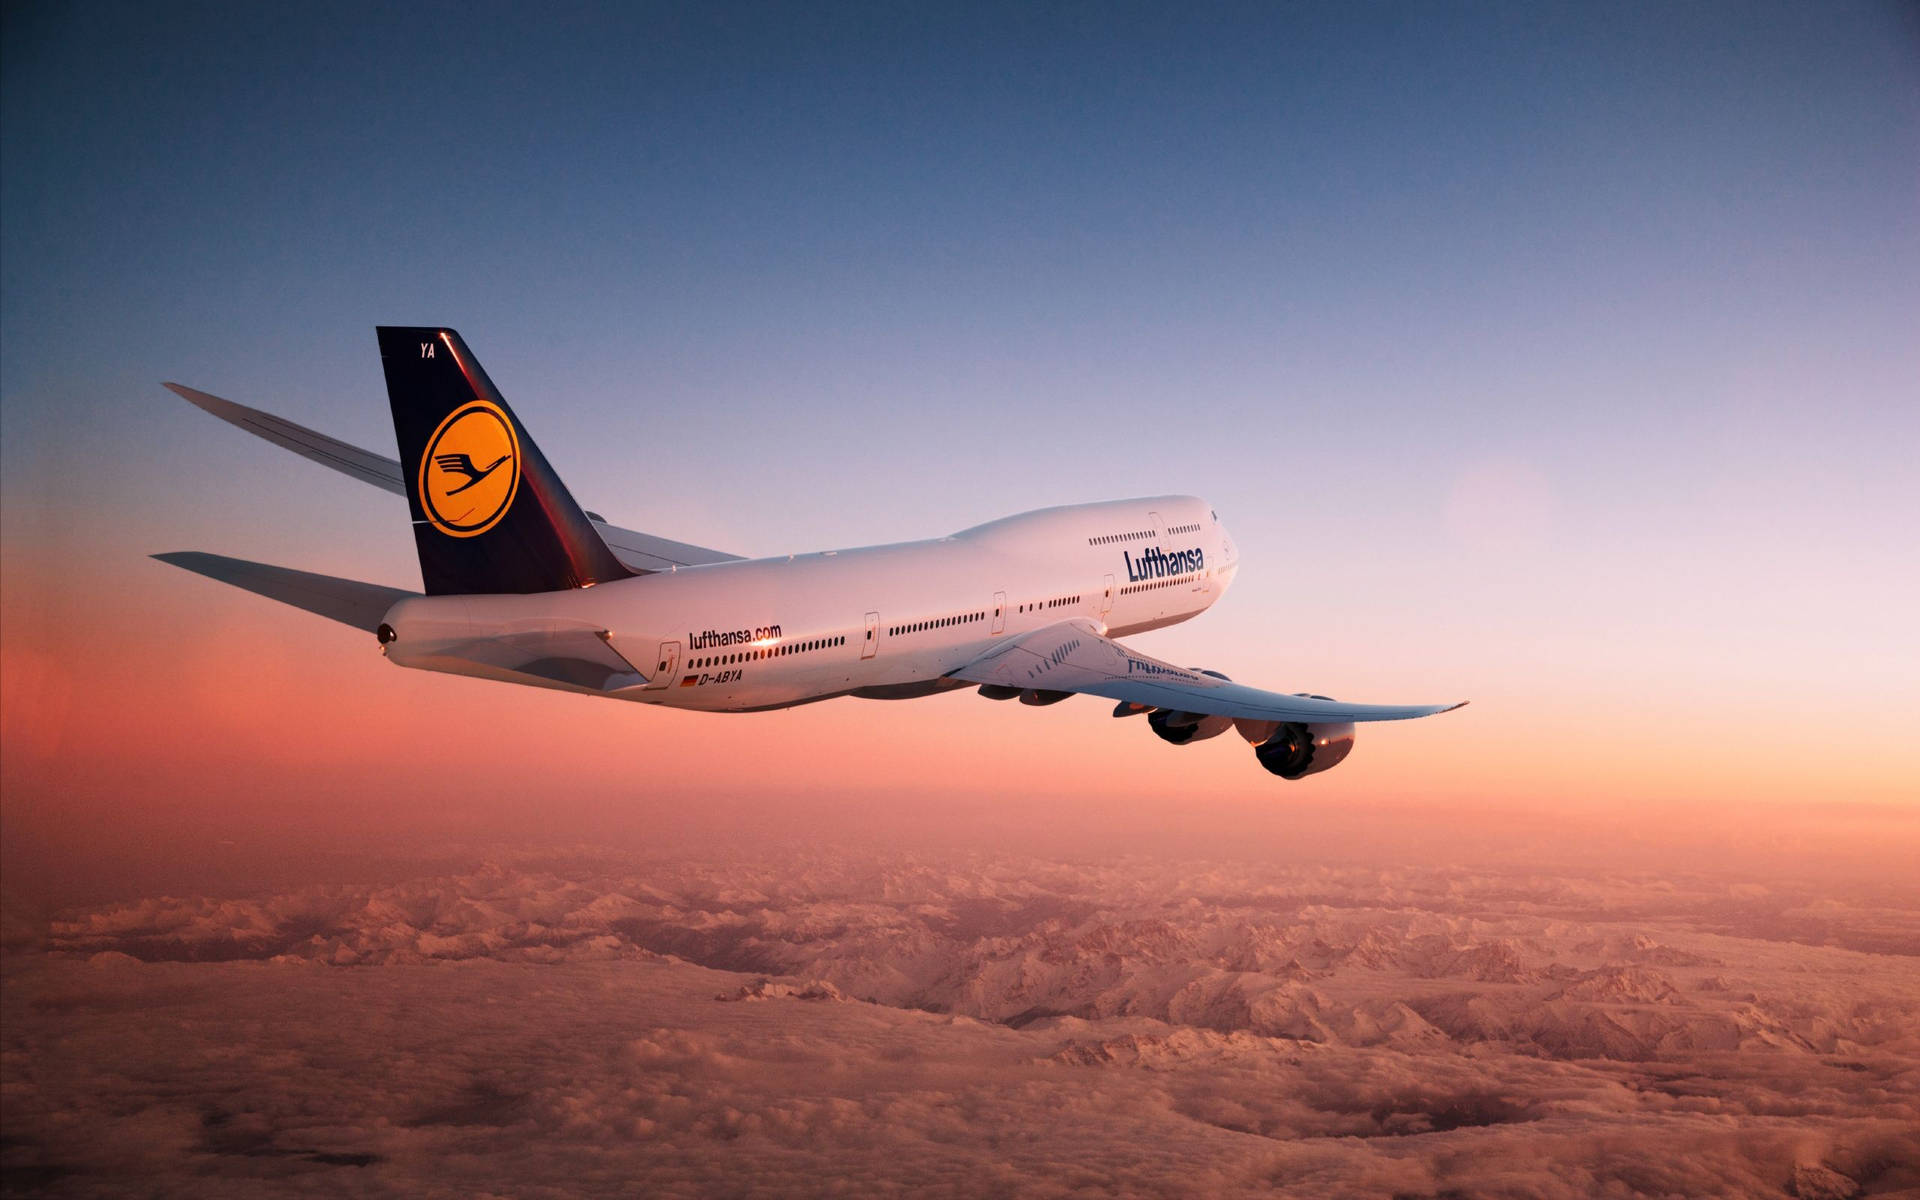 Deutsche Lufthansa Airplane Above A Rose Gold Heaven Picture